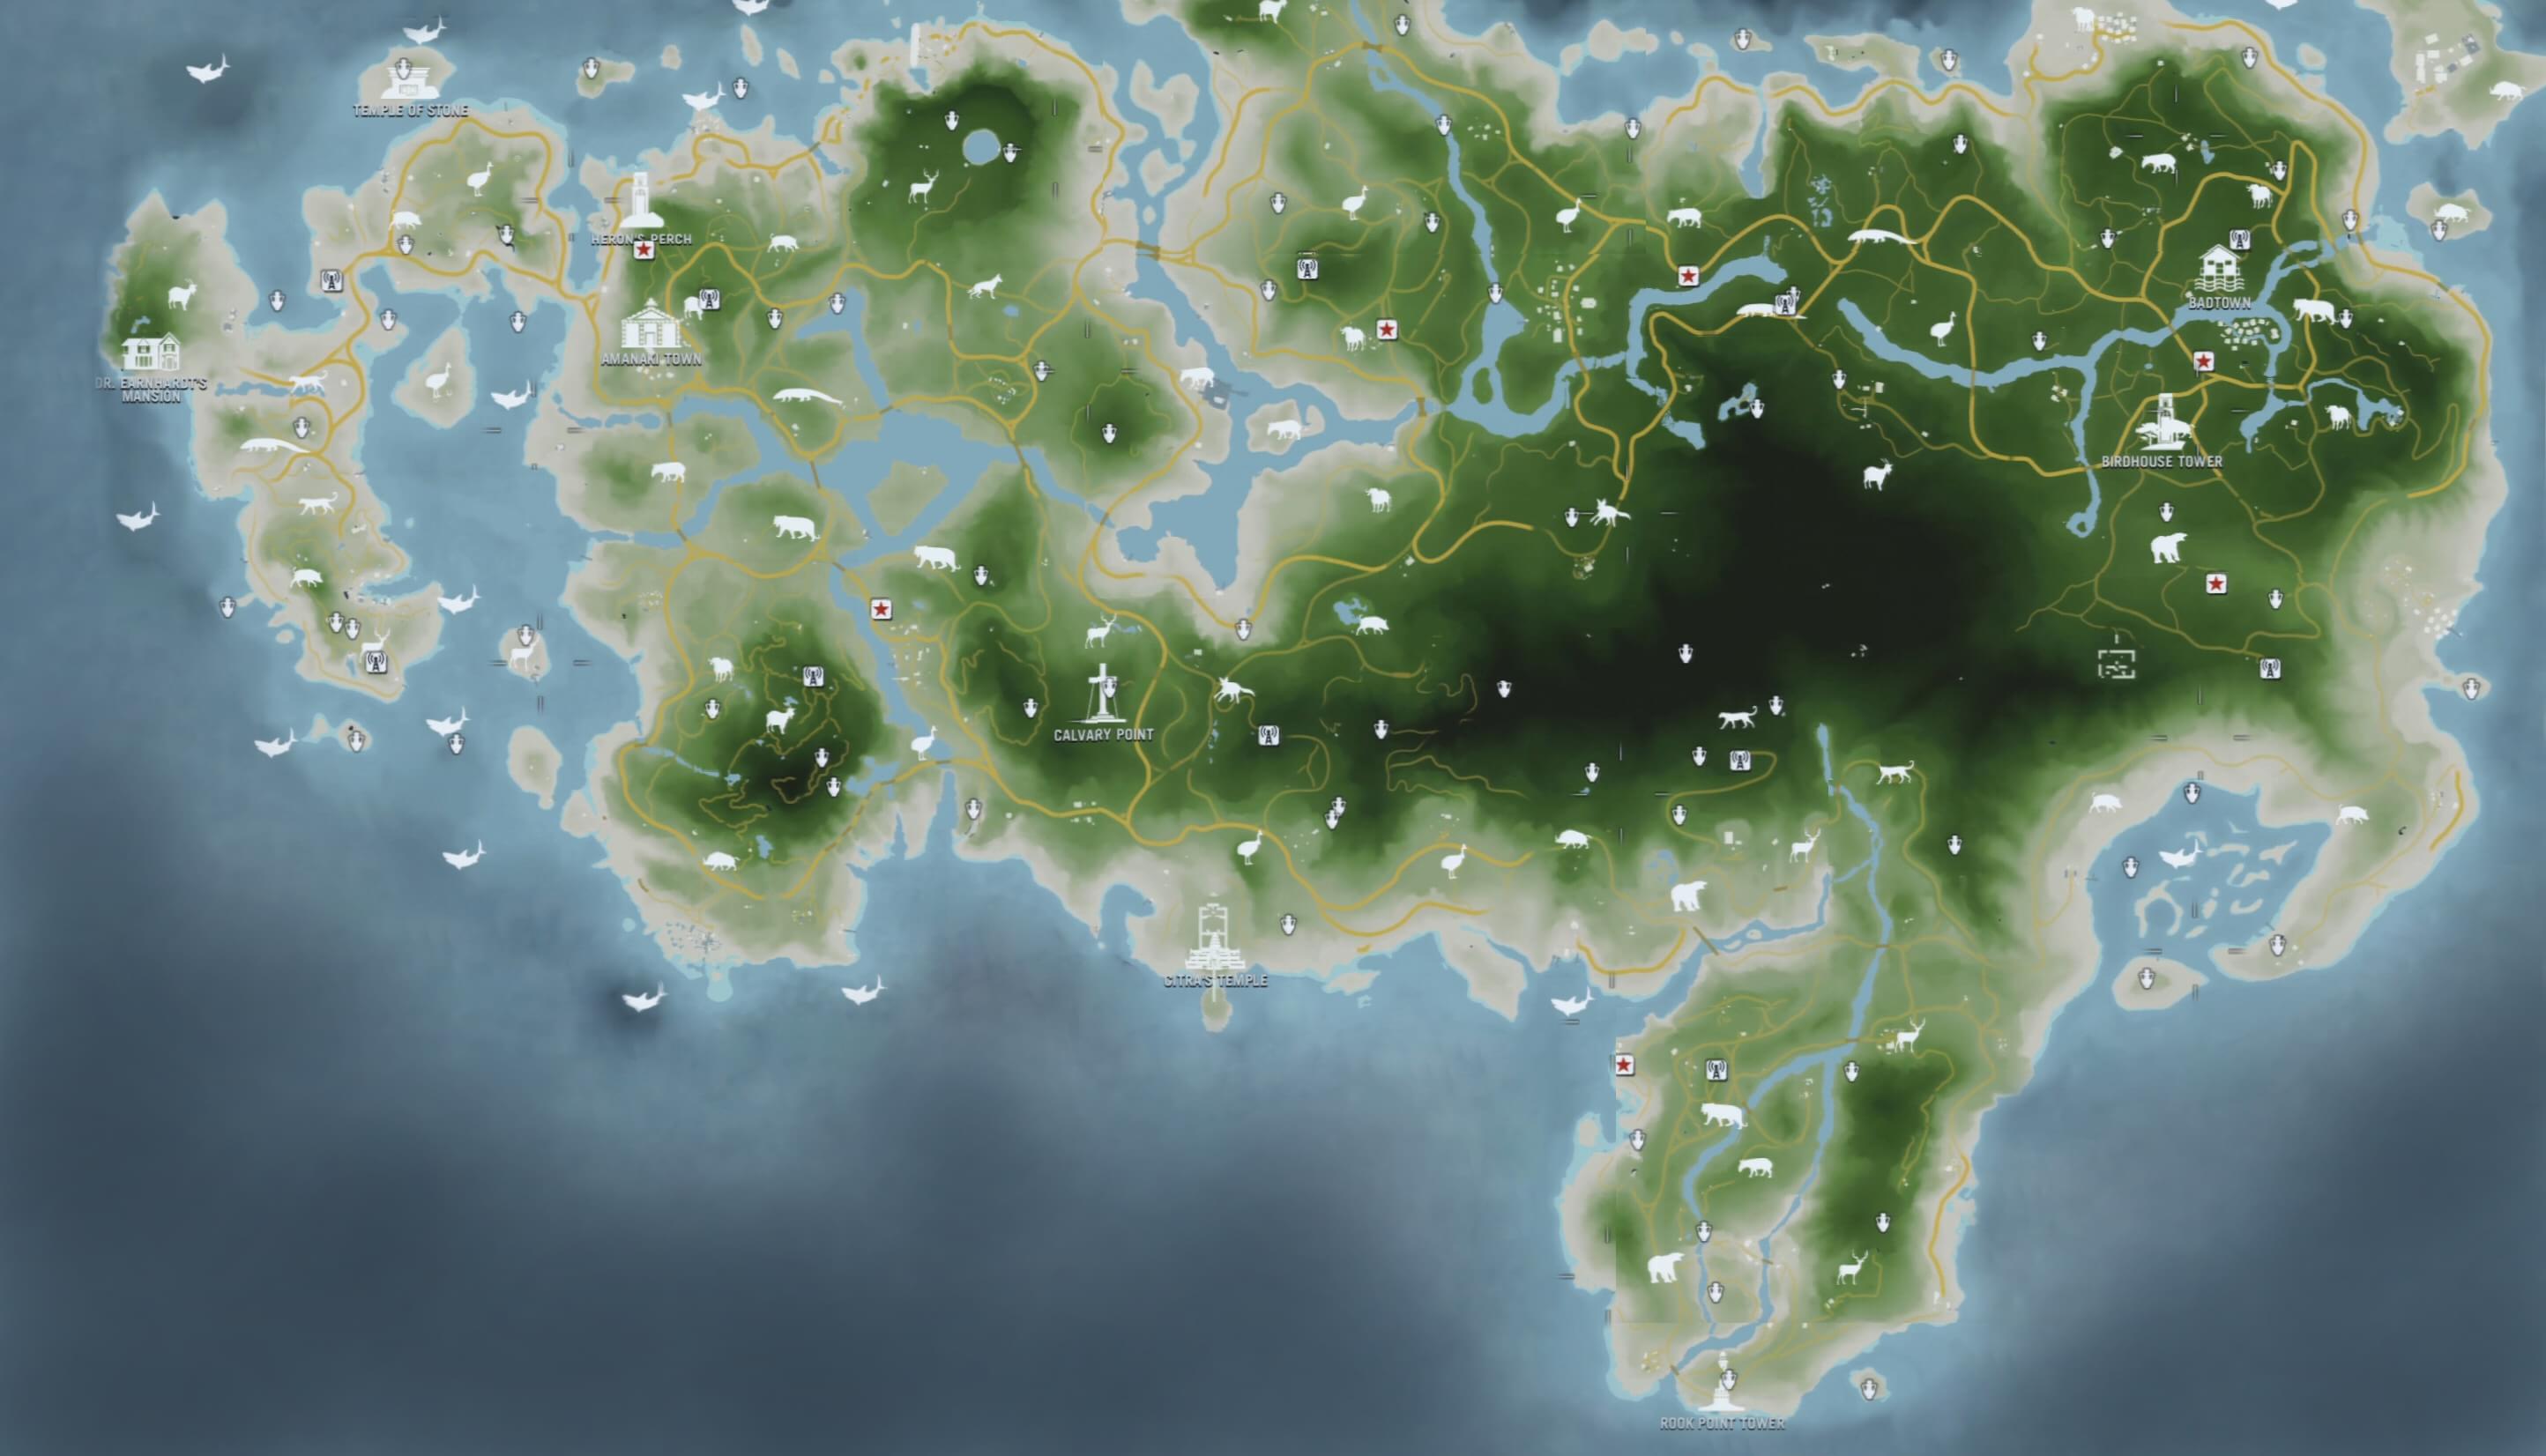 Vazou! Veja o gigantesco mapa de Far Cry 4 com animais, regiões e mais